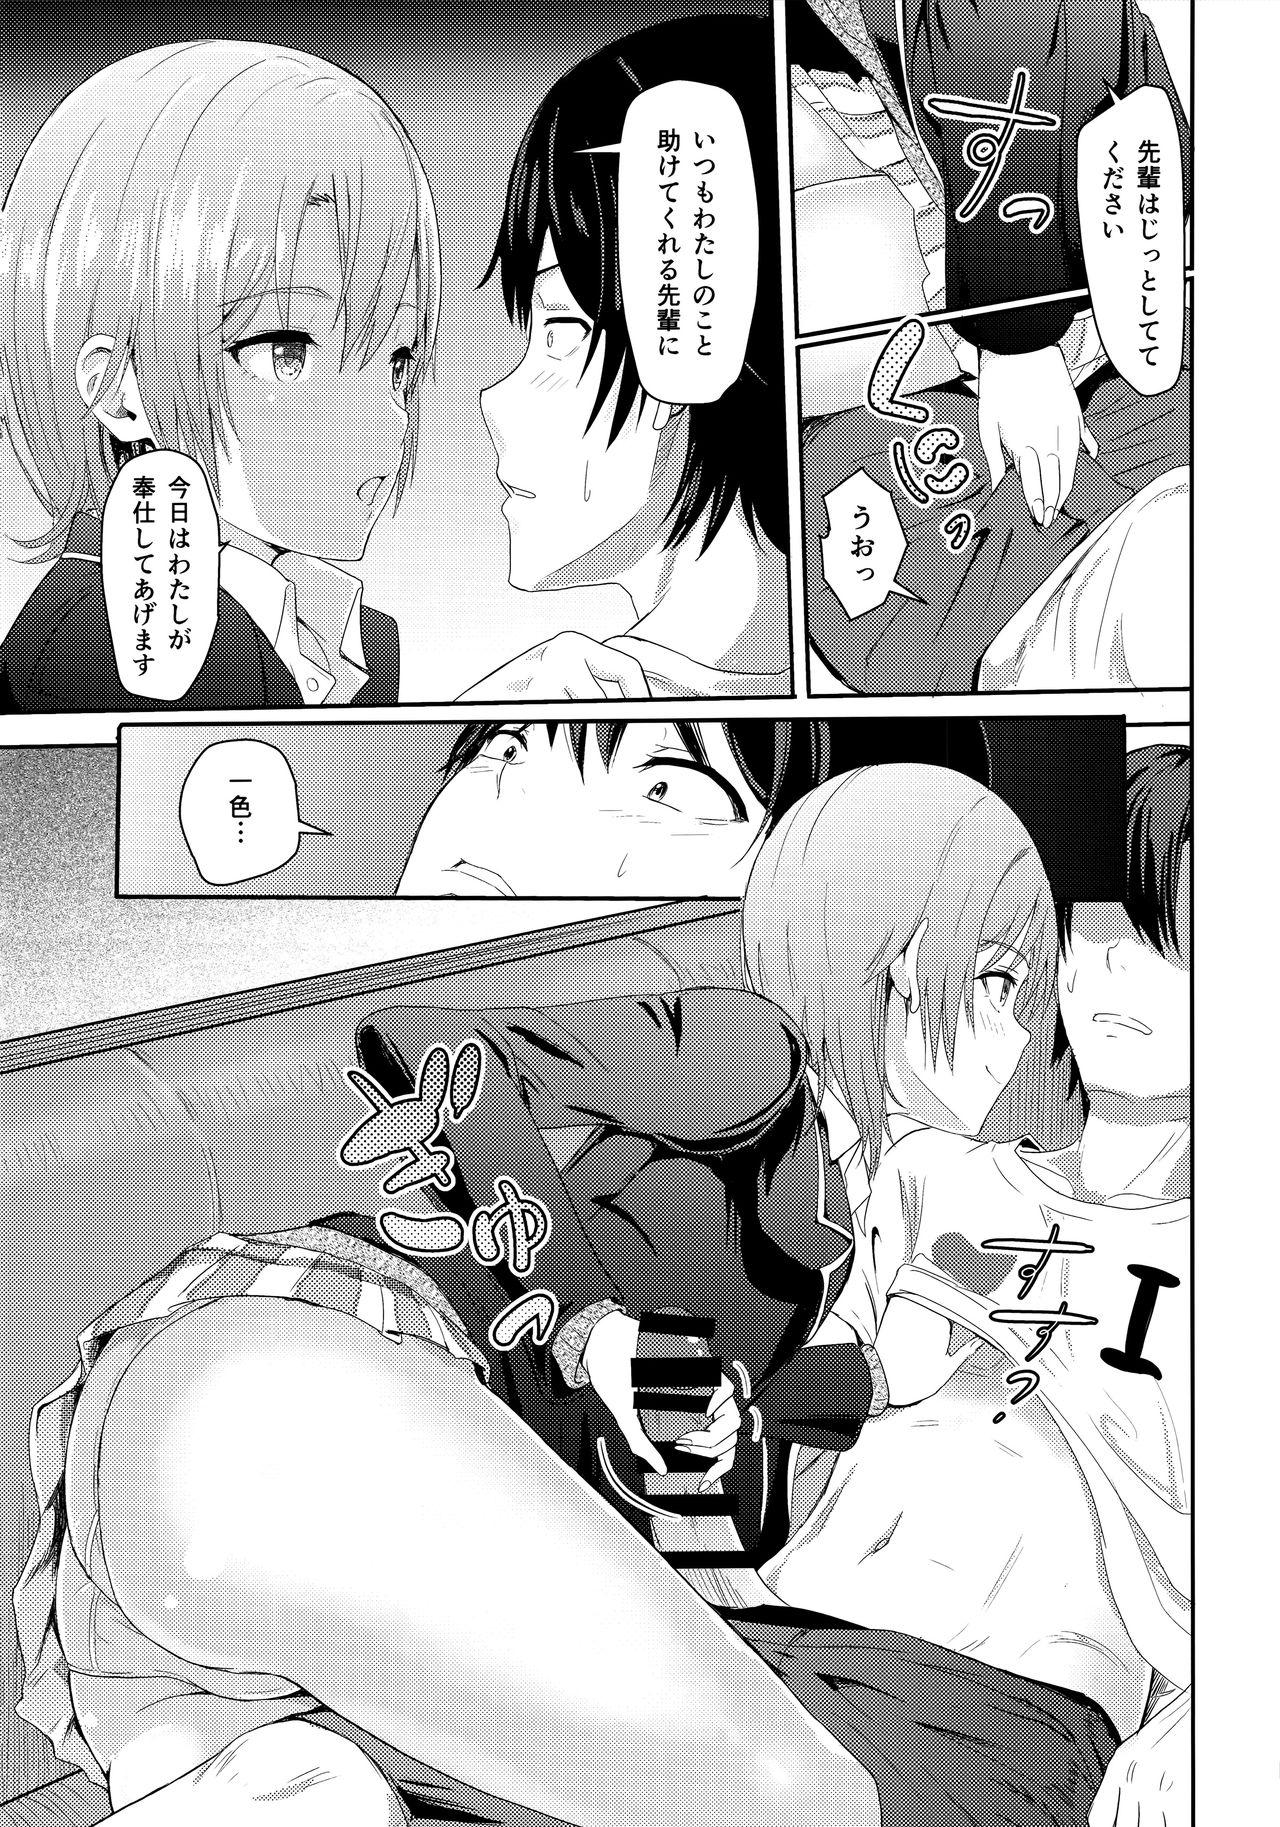 Masturbandose Iroha - Yahari ore no seishun love come wa machigatteiru Friend - Page 10